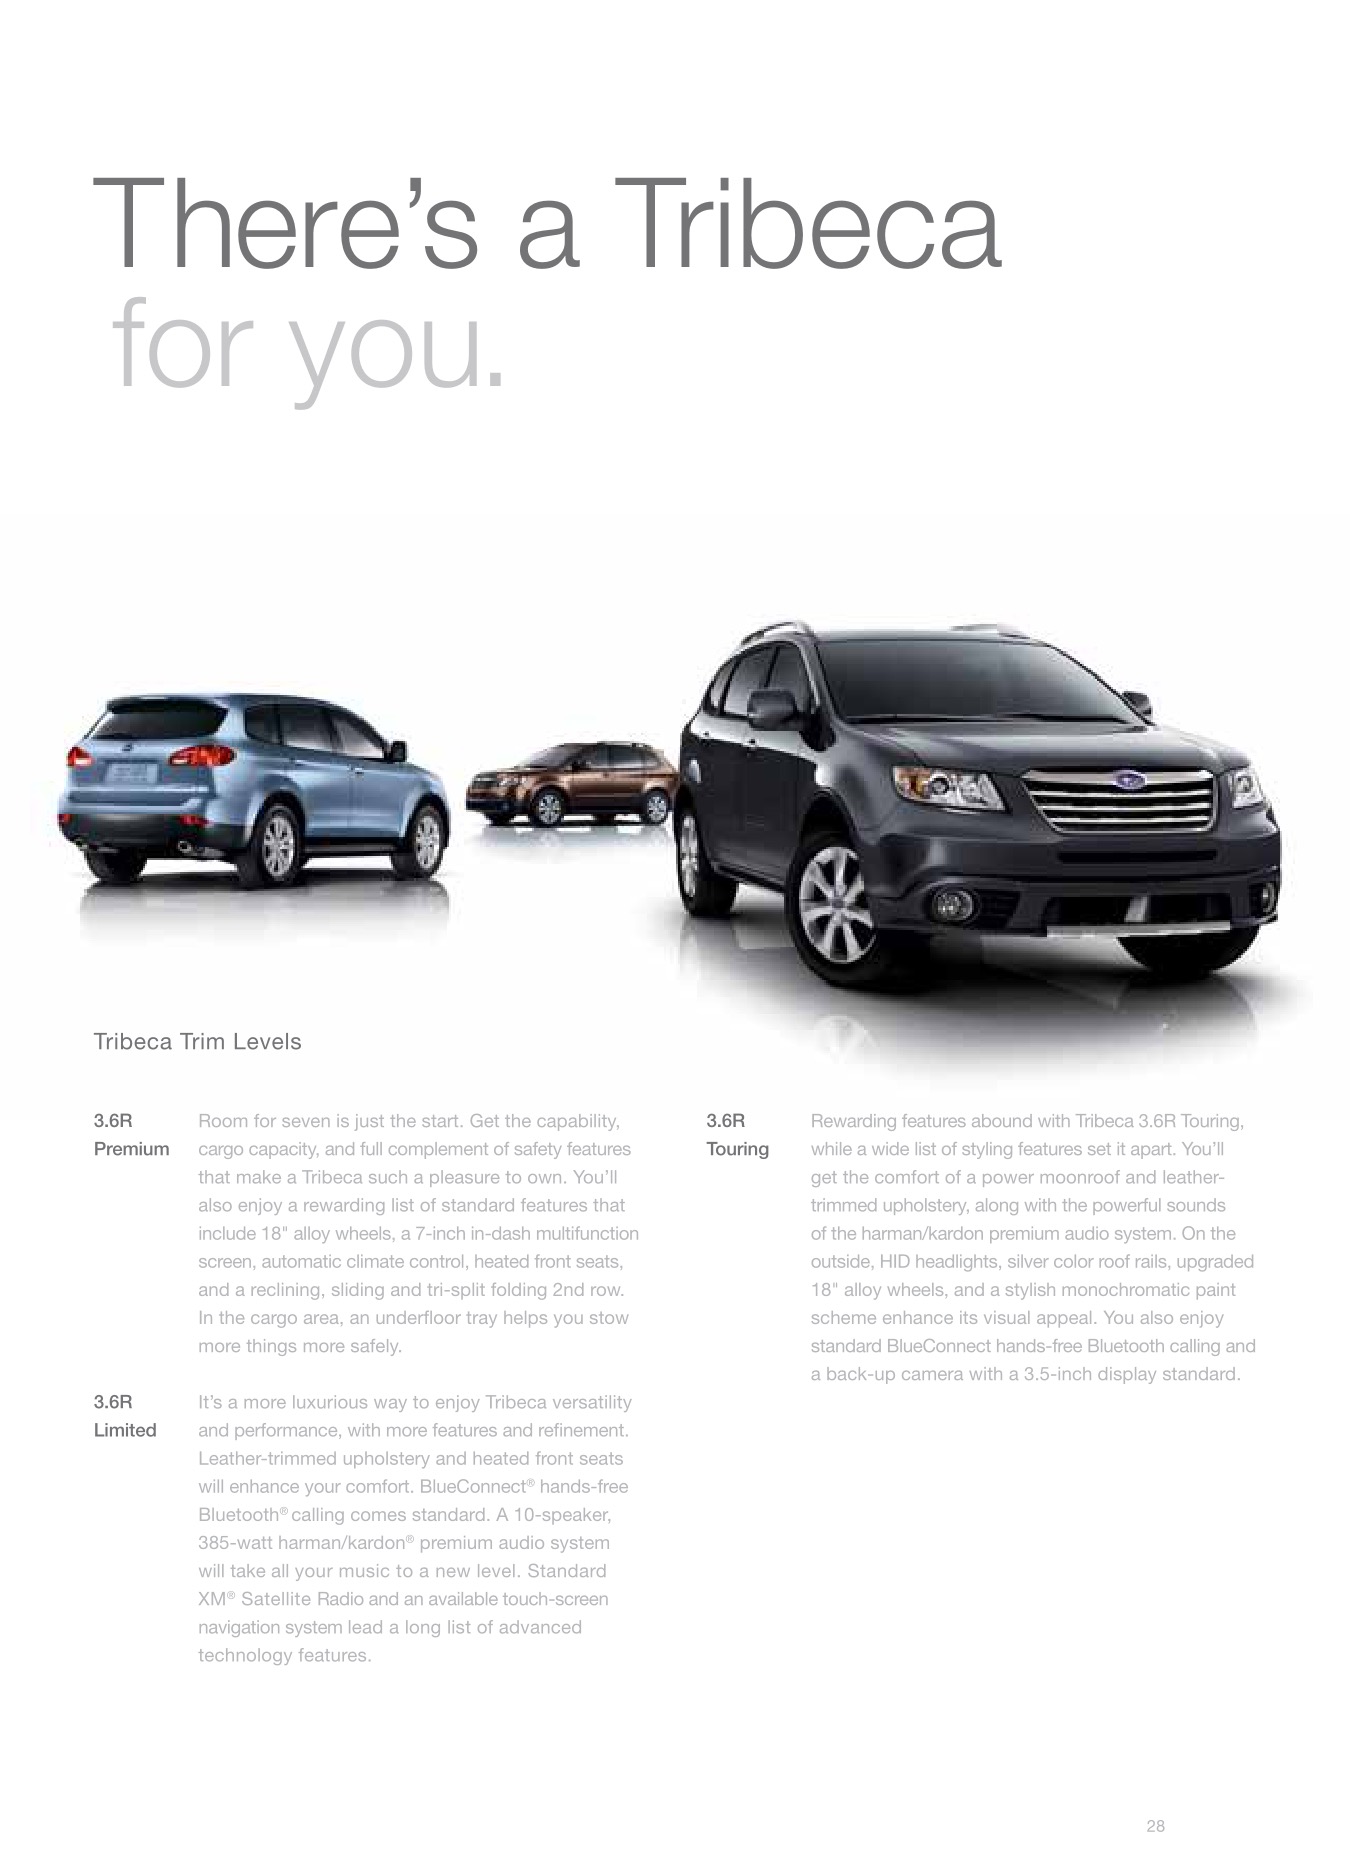 2010 Subaru Tribeca Brochure Page 16